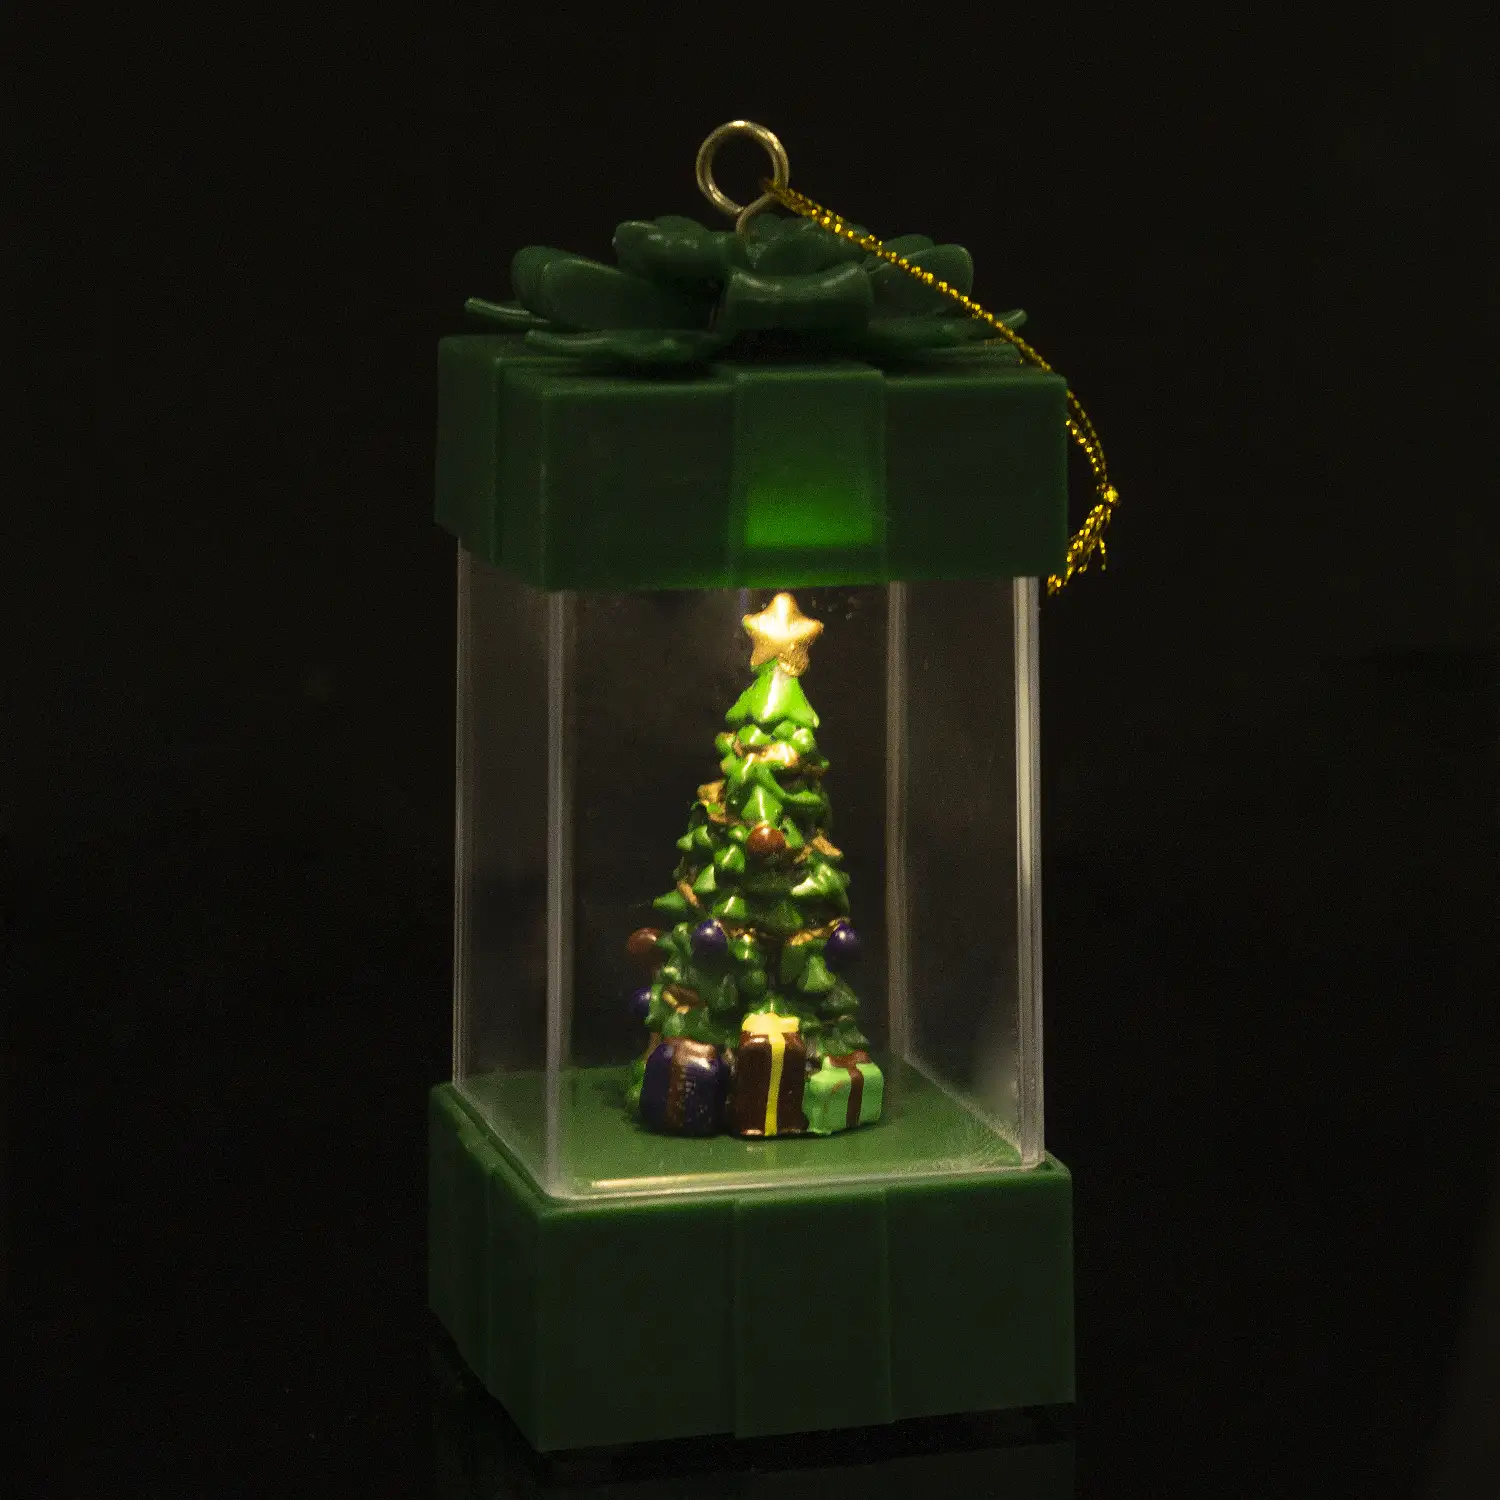 Candil de navidad con luz, diseño regalo con árbol de navidad.